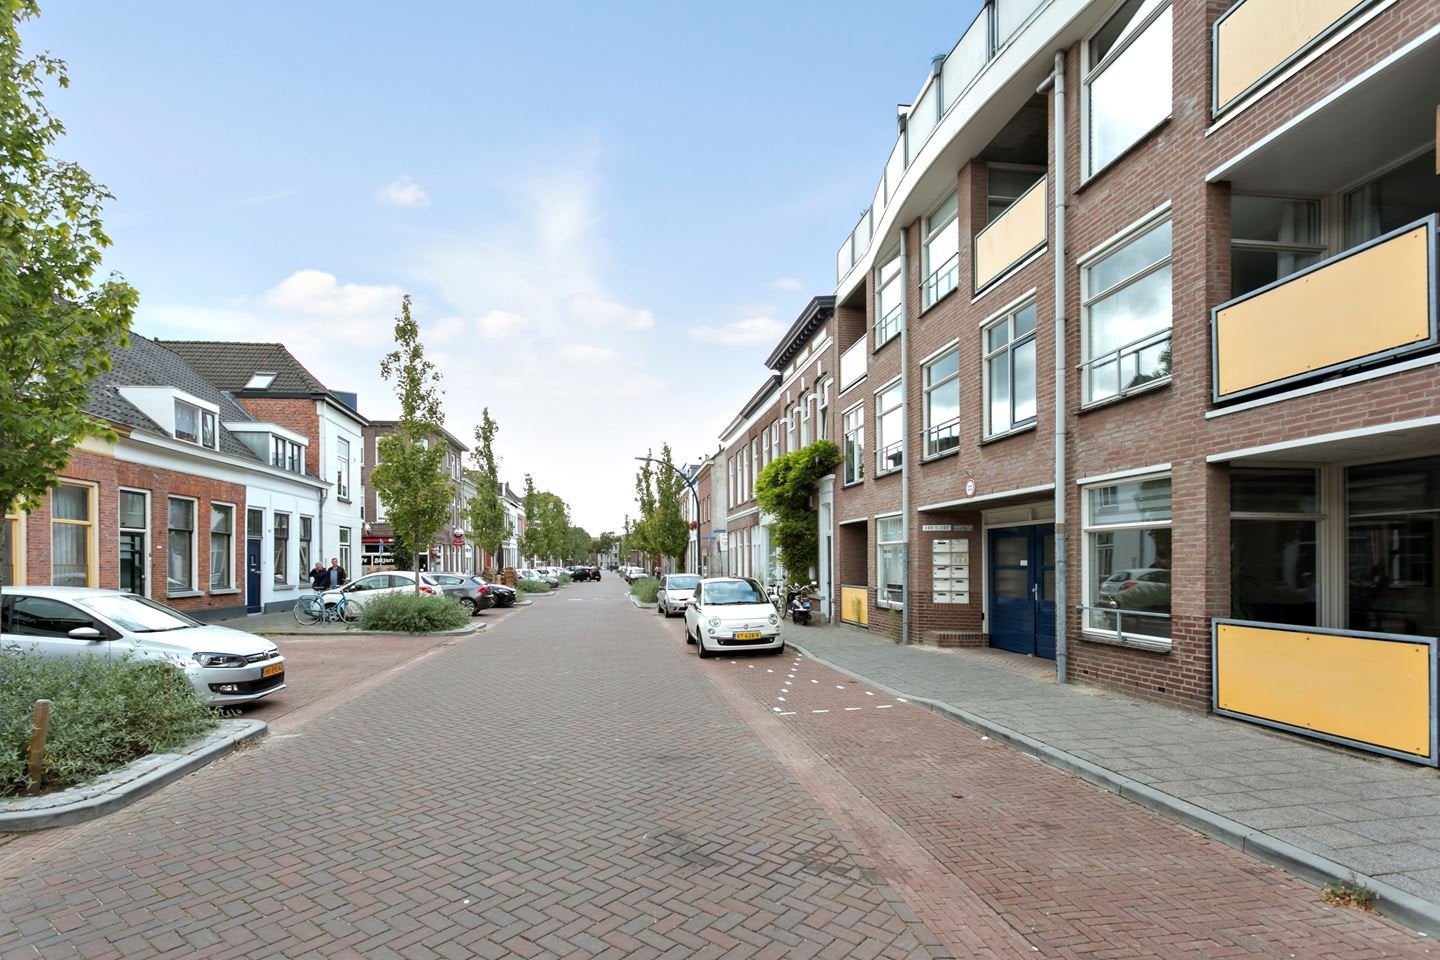 Bekijk foto 1/21 van apartment in Breda